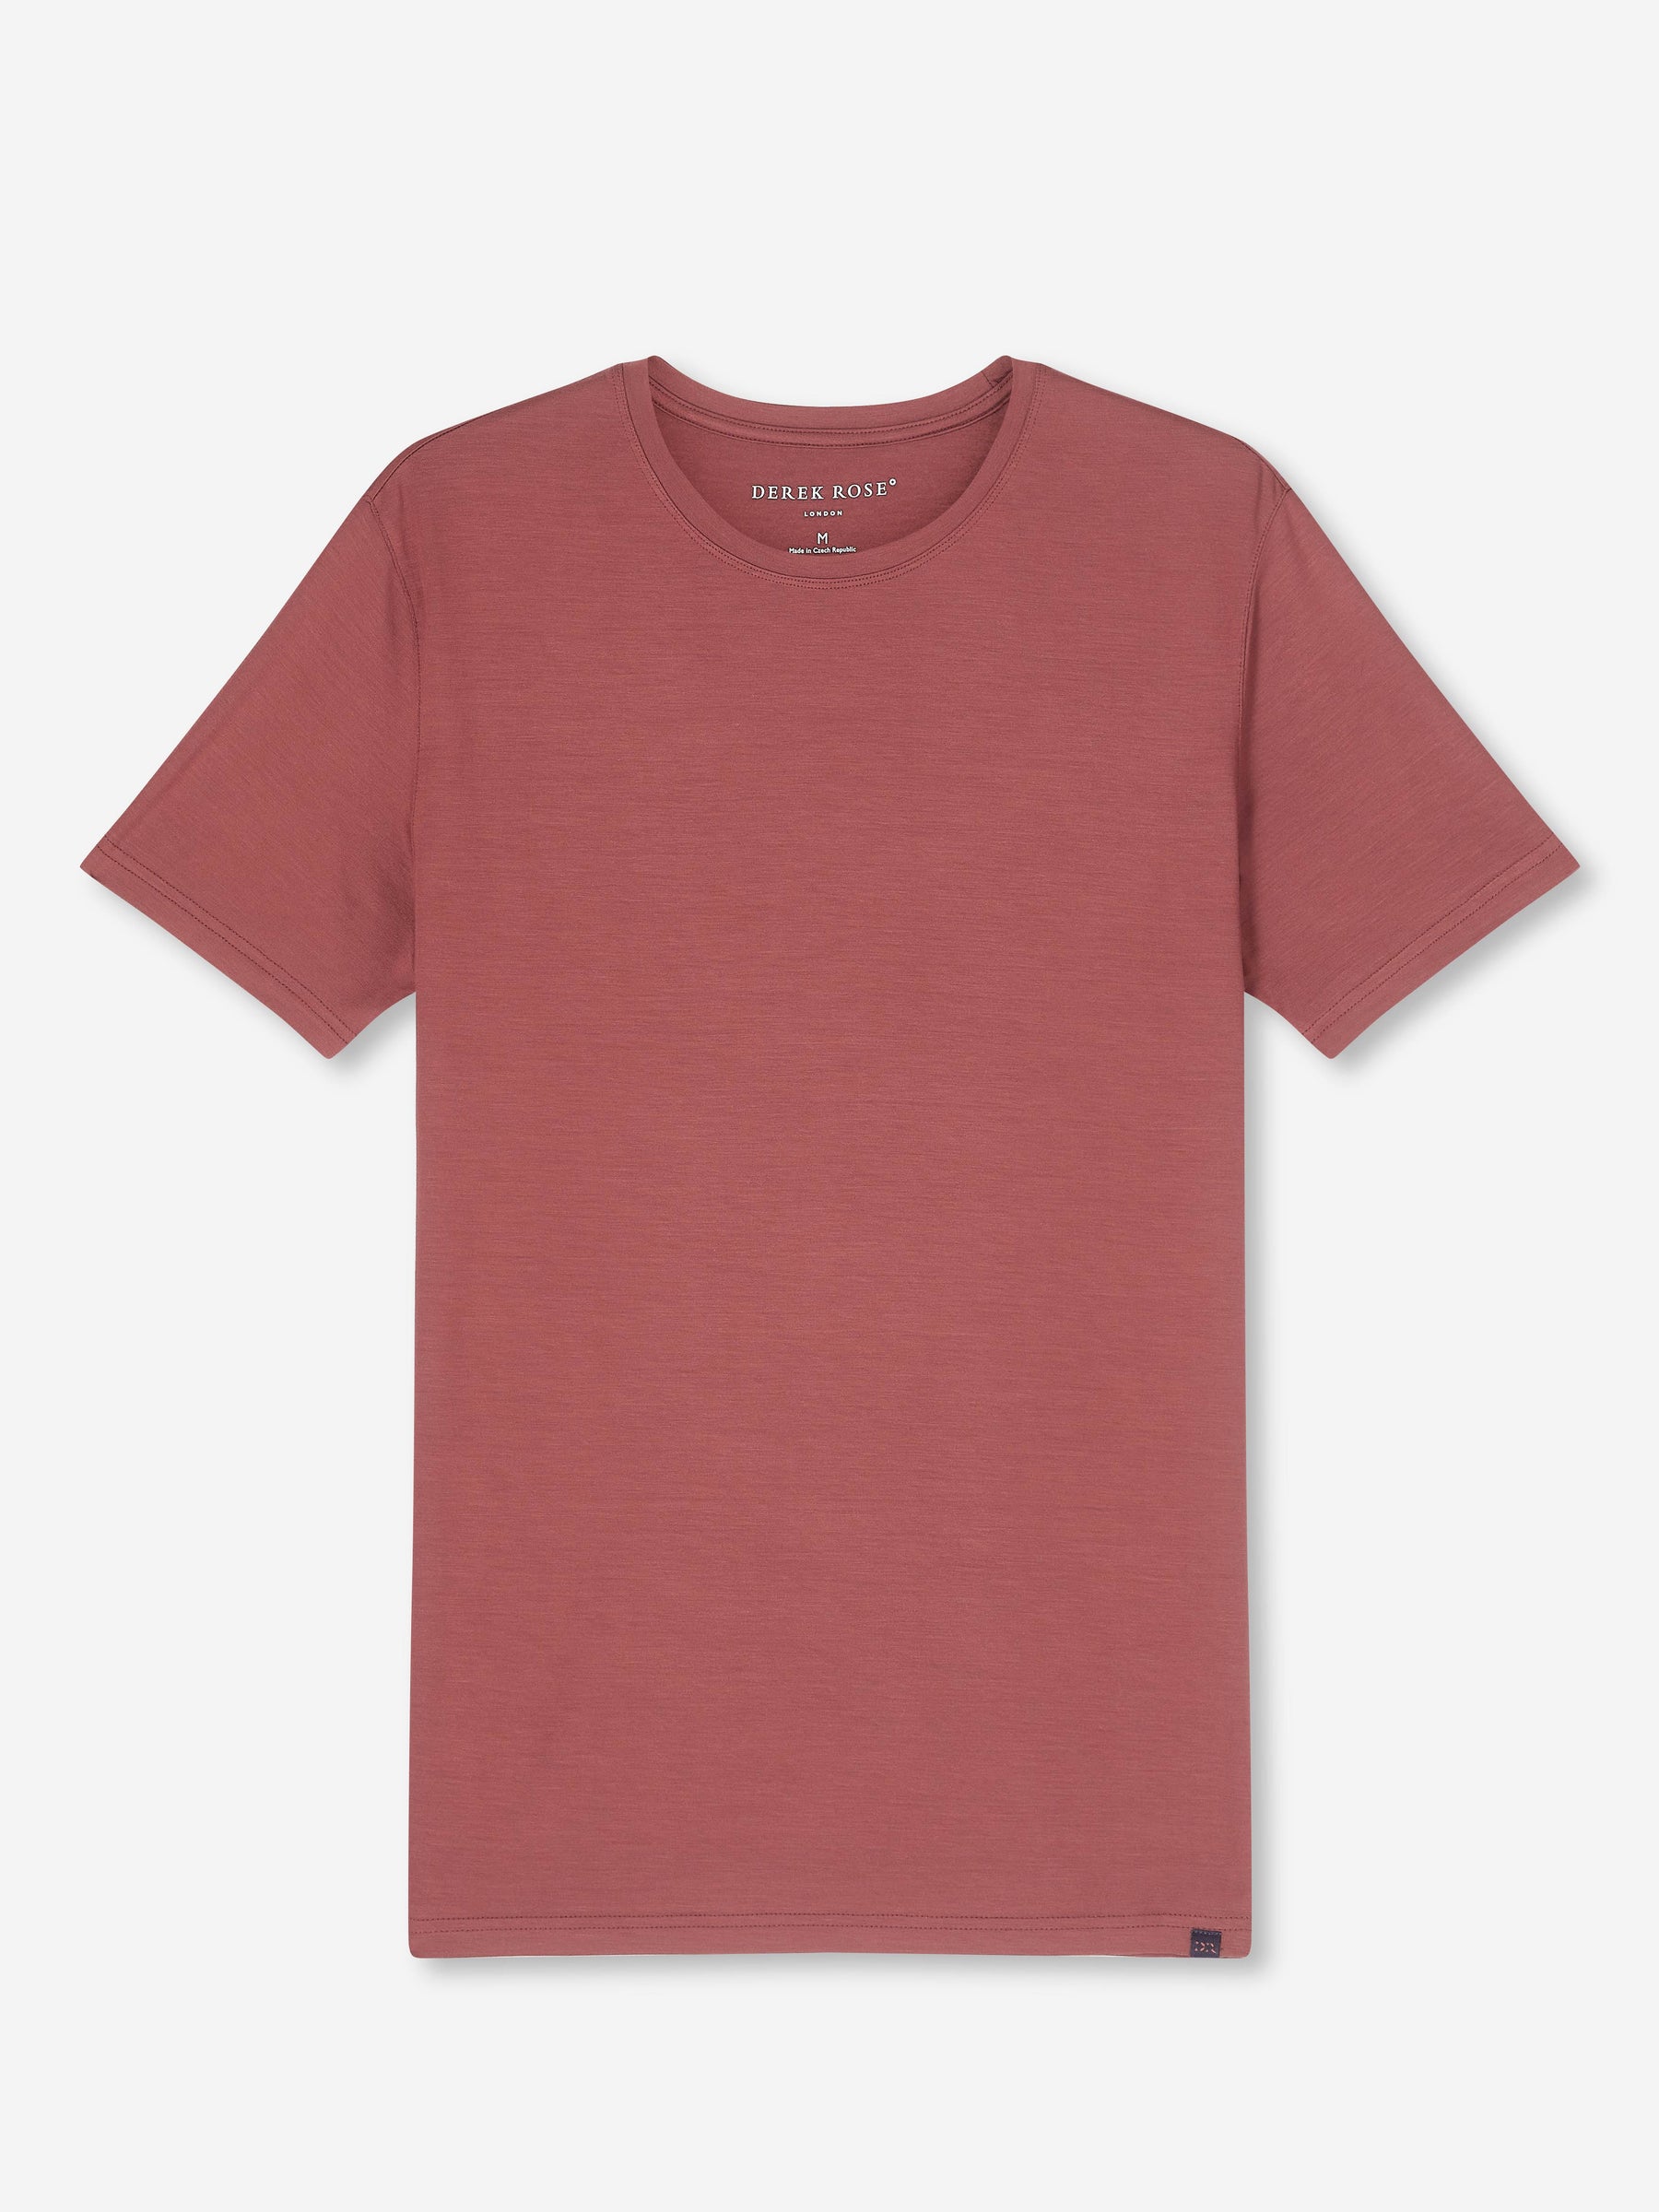 Men's T-Shirt Basel Micro Modal Stretch Brown